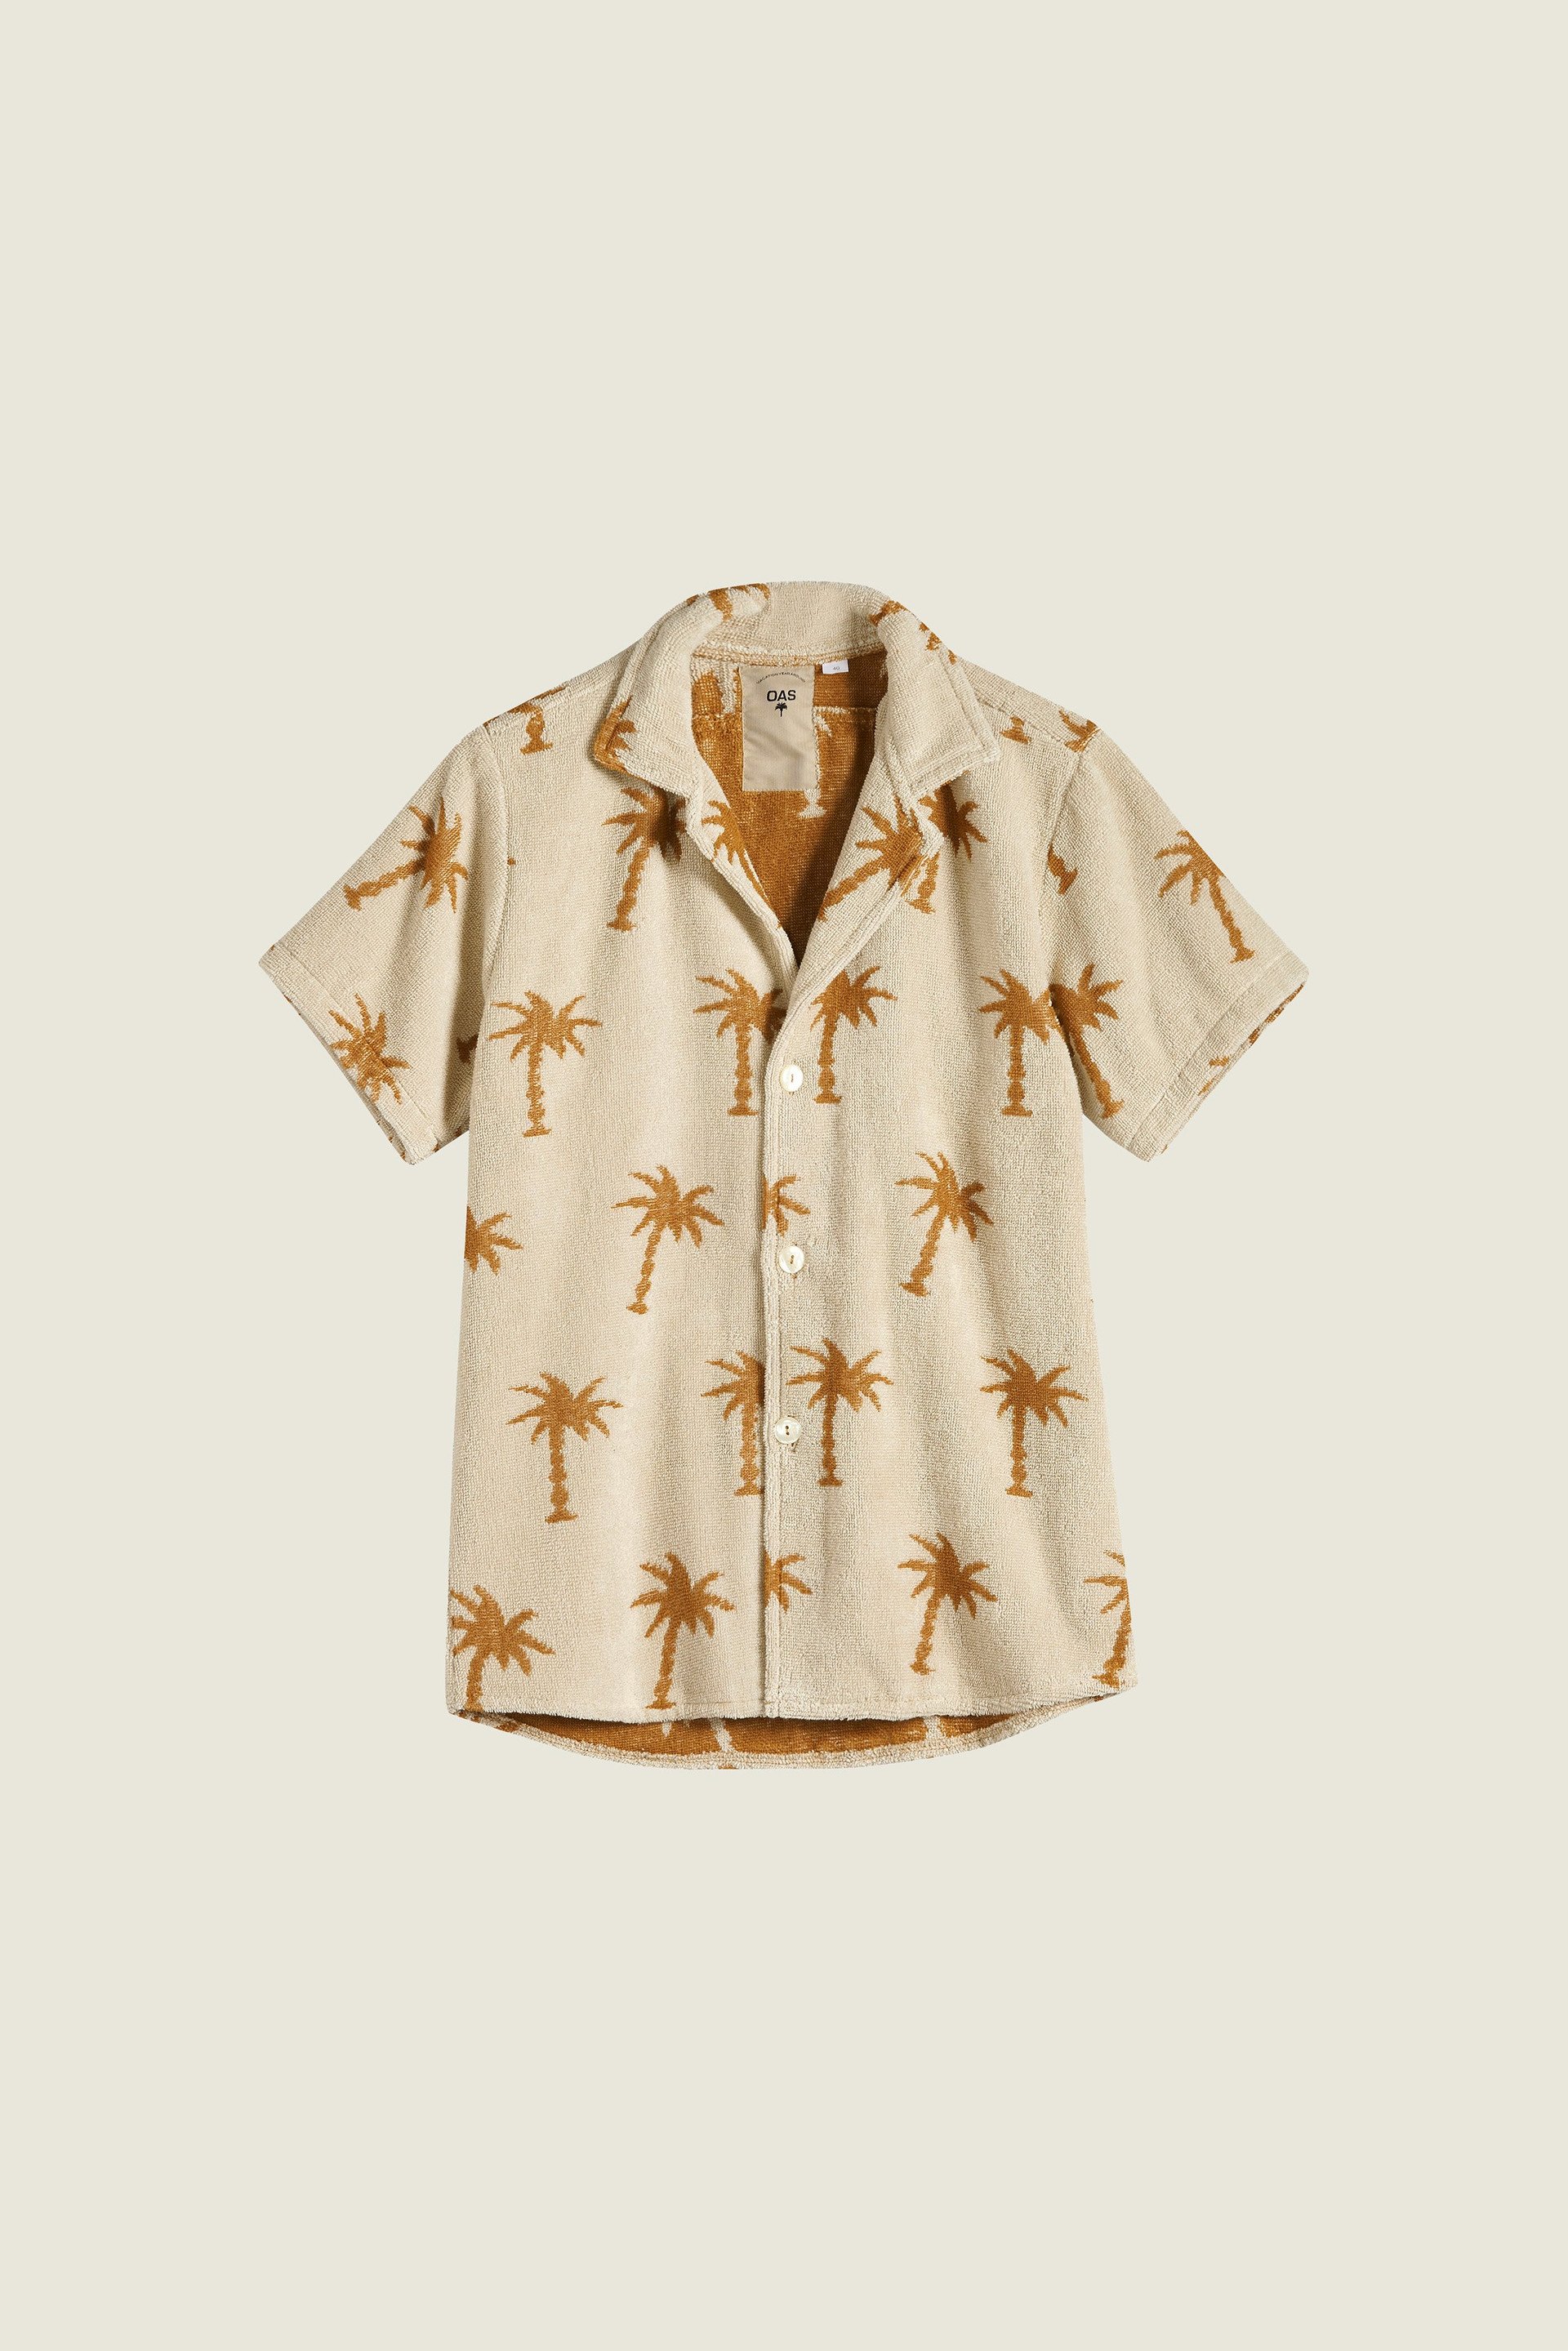 Palmy Cuba Camisa de Felpa